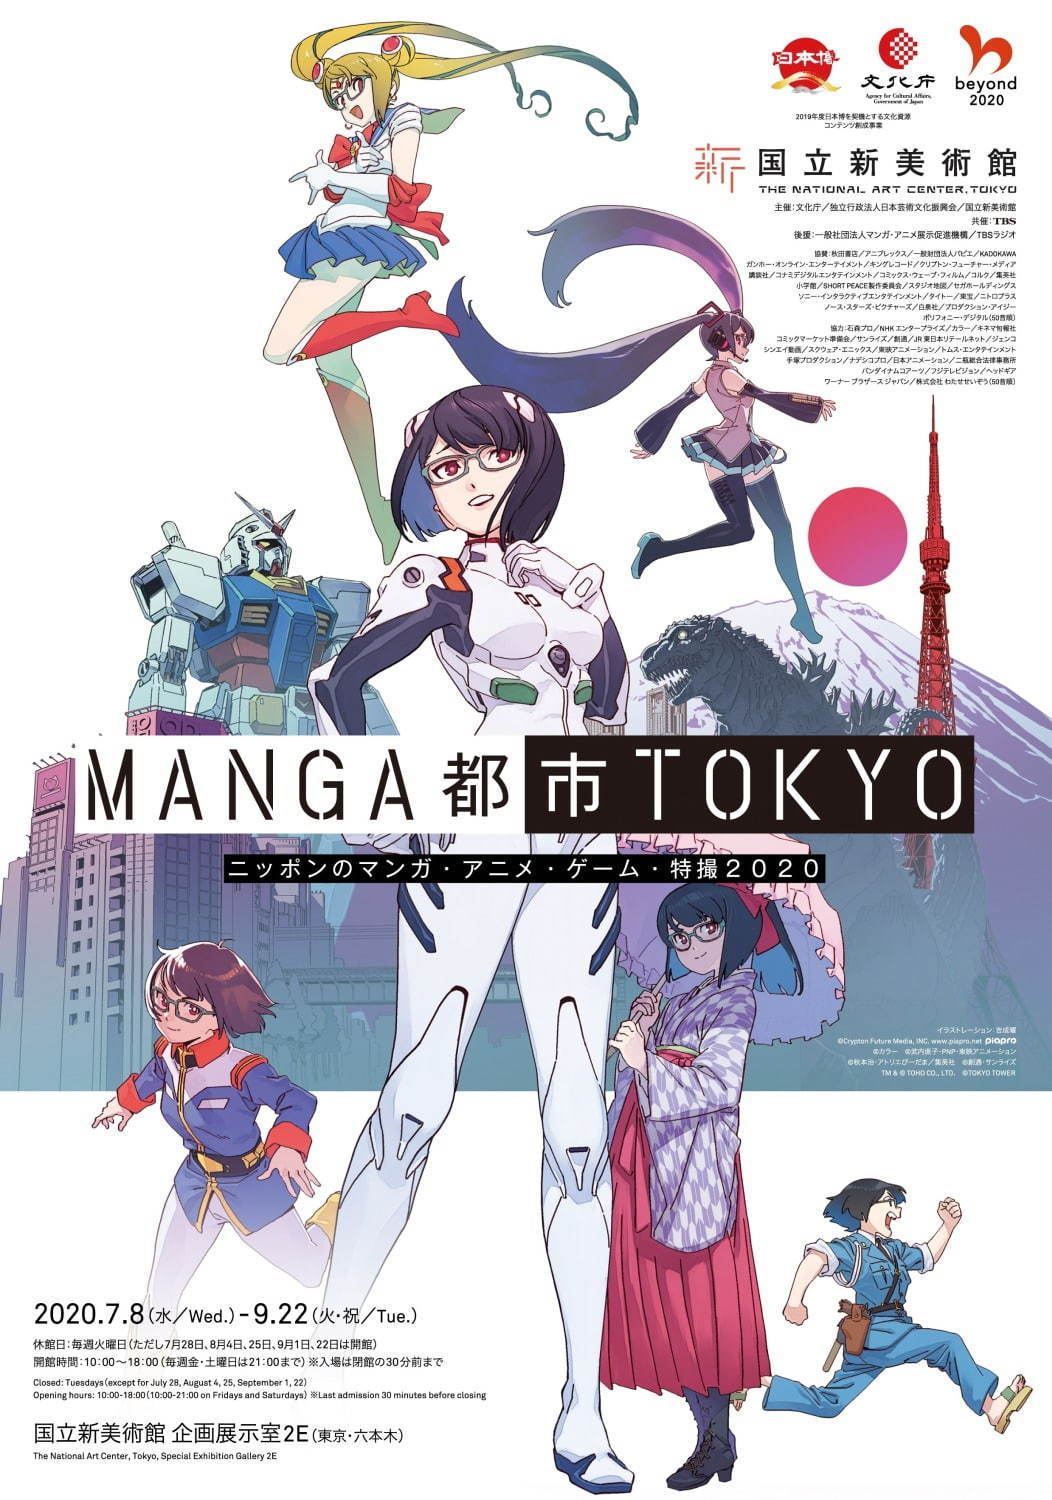 展覧会 Manga都市tokyo 国立新美術館にマンガ アニメ ゲーム 特撮